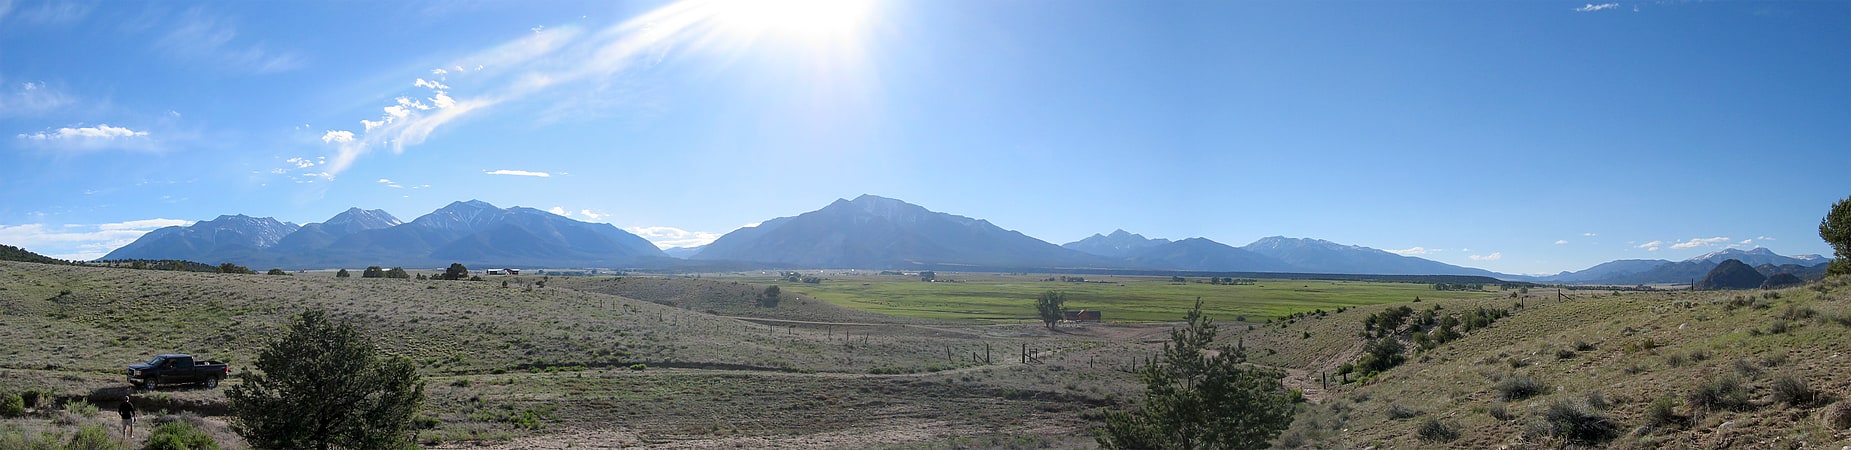 Mountain range in Colorado